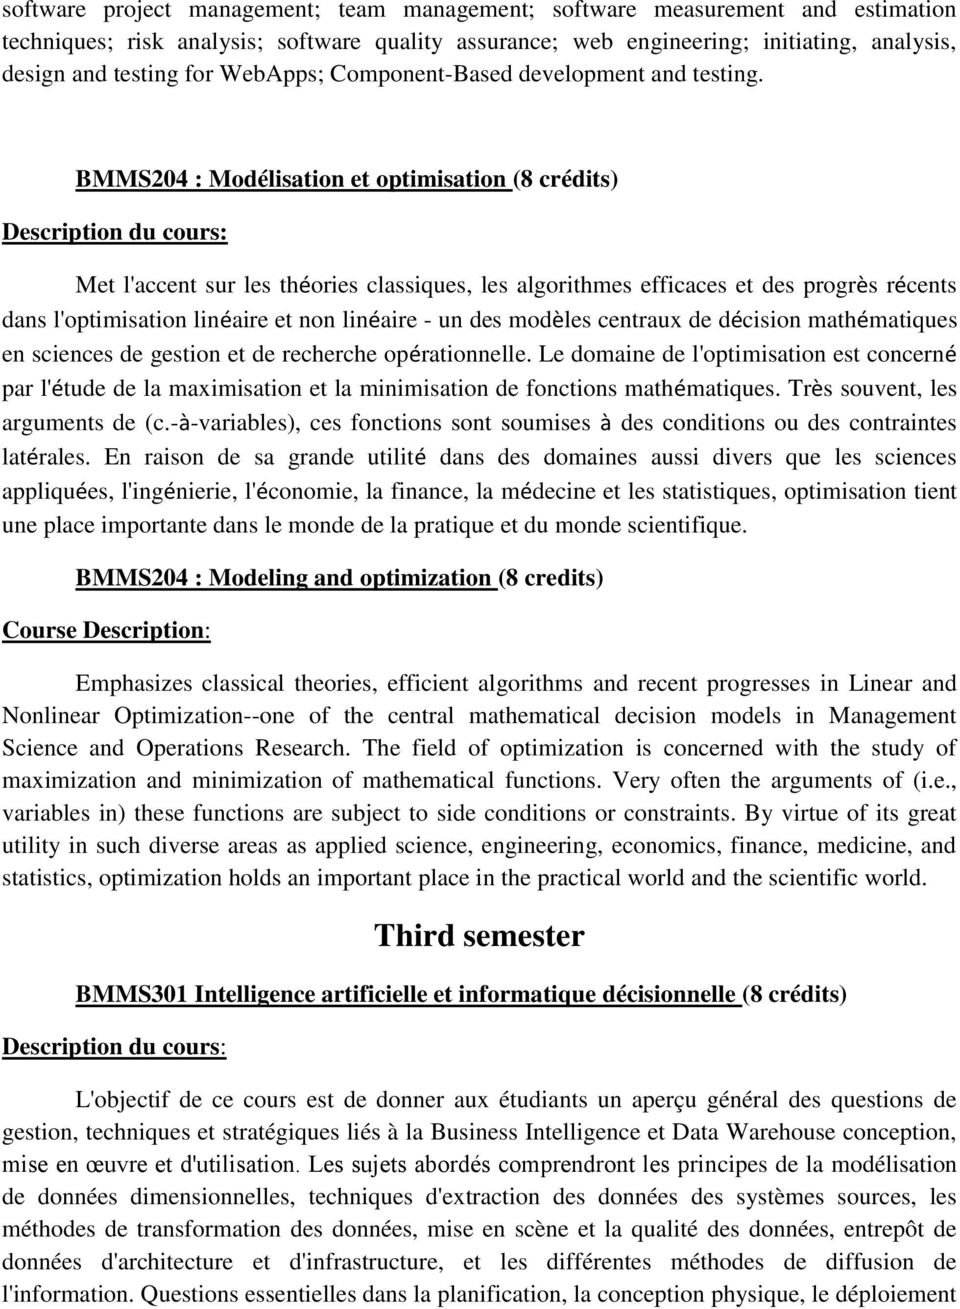 BMMS204 : Modélisation et optimisation (8 crédits) Description du cours: Met l'accent sur les théories classiques, les algorithmes efficaces et des progrès récents dans l'optimisation linéaire et non